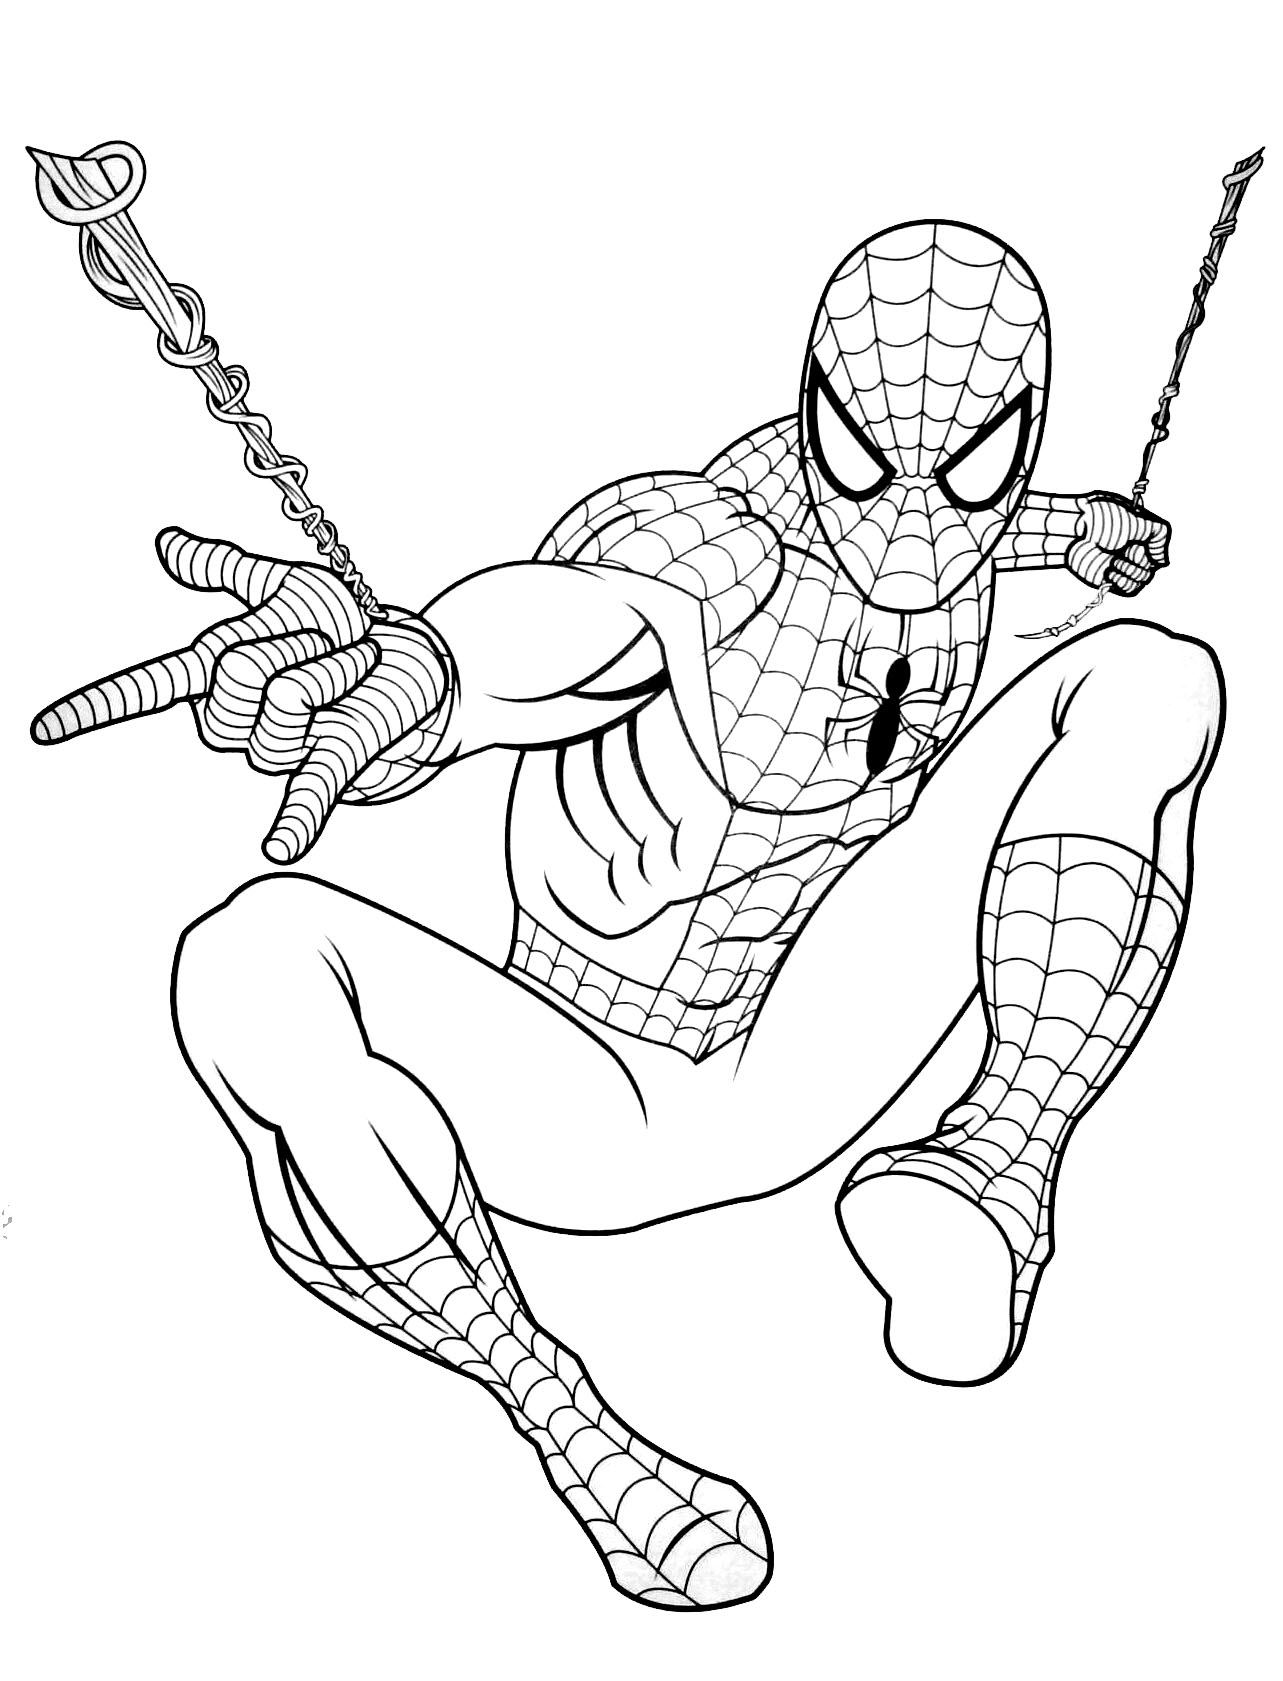 Coloriage de Spiderman facile pour enfants